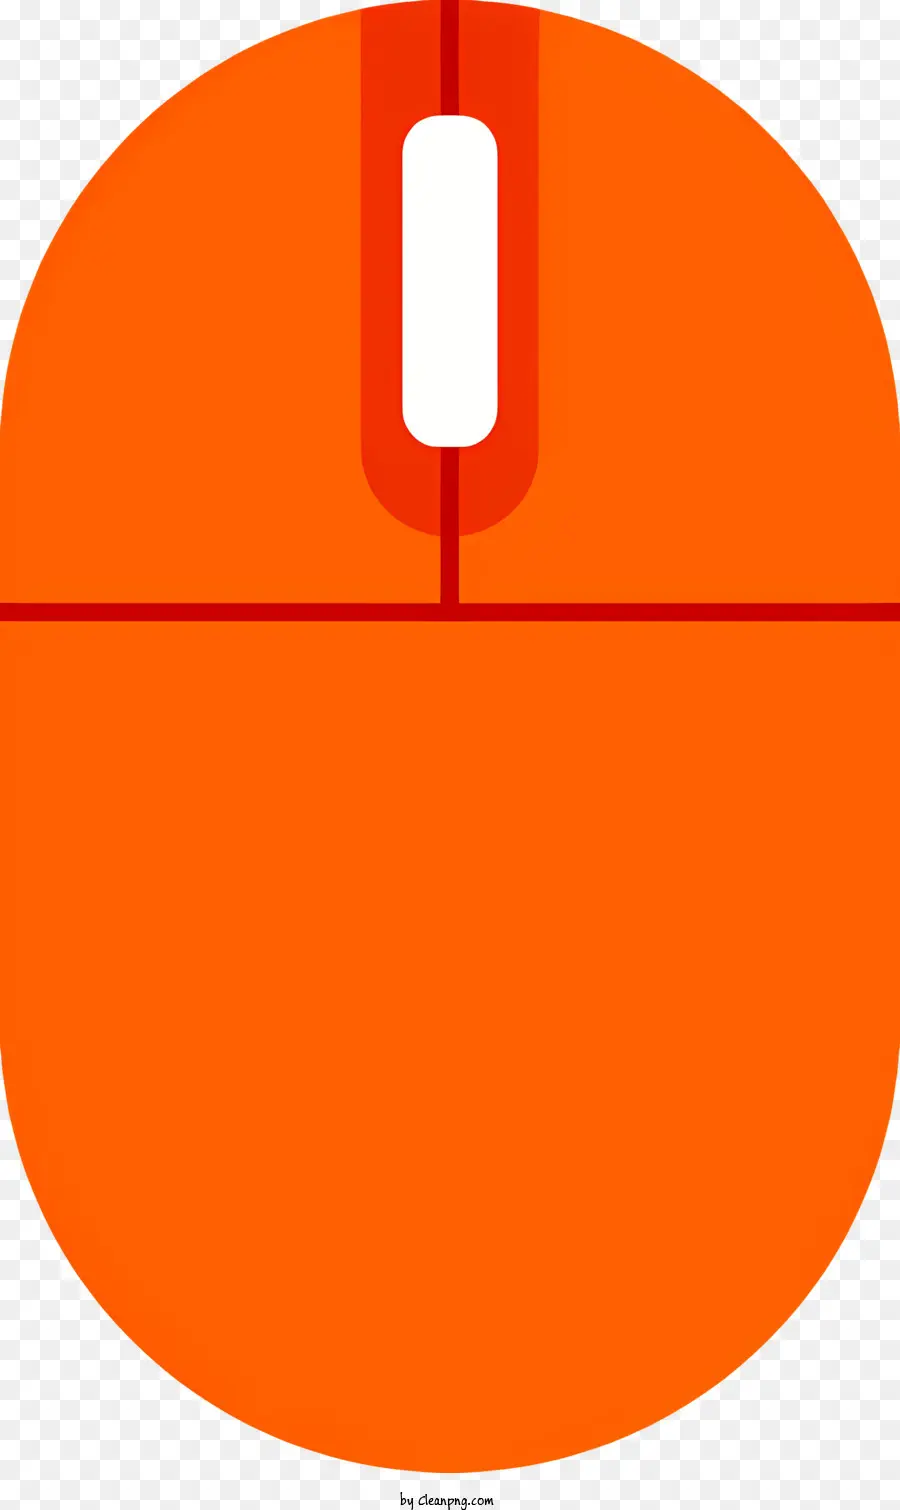 màu cam nền - Chuột máy tính có mũi tên trắng trên nền màu cam